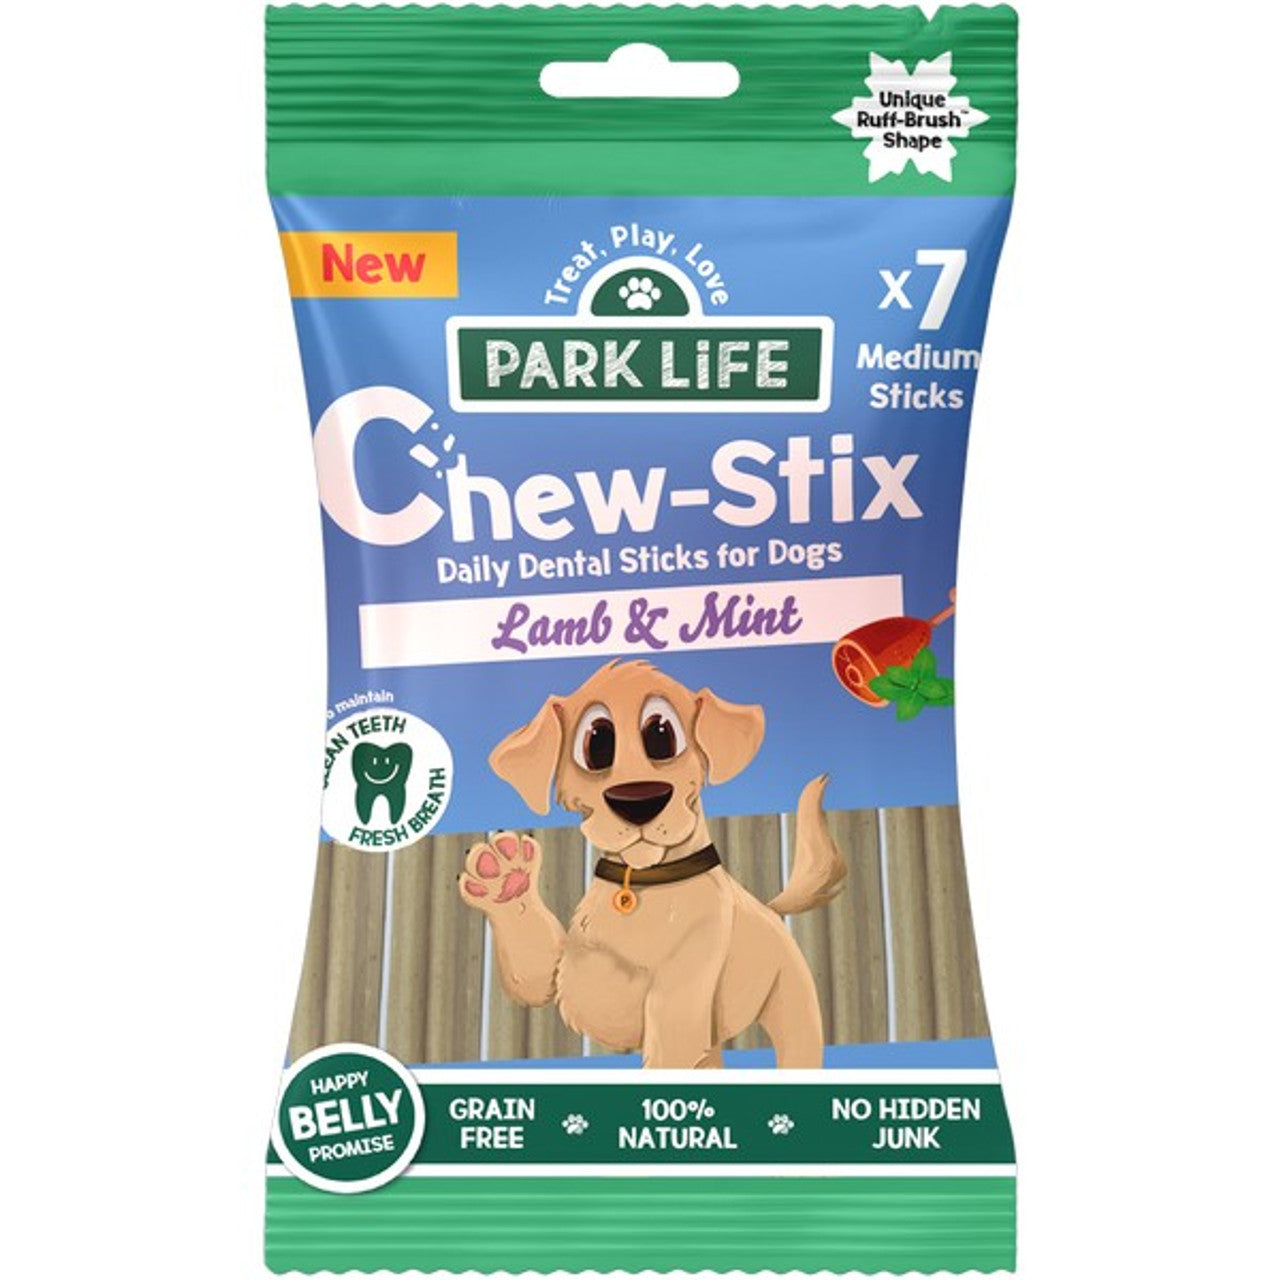 Park Life Chew-Stix Lamb & Mint 180g (7x Medium Sticks)